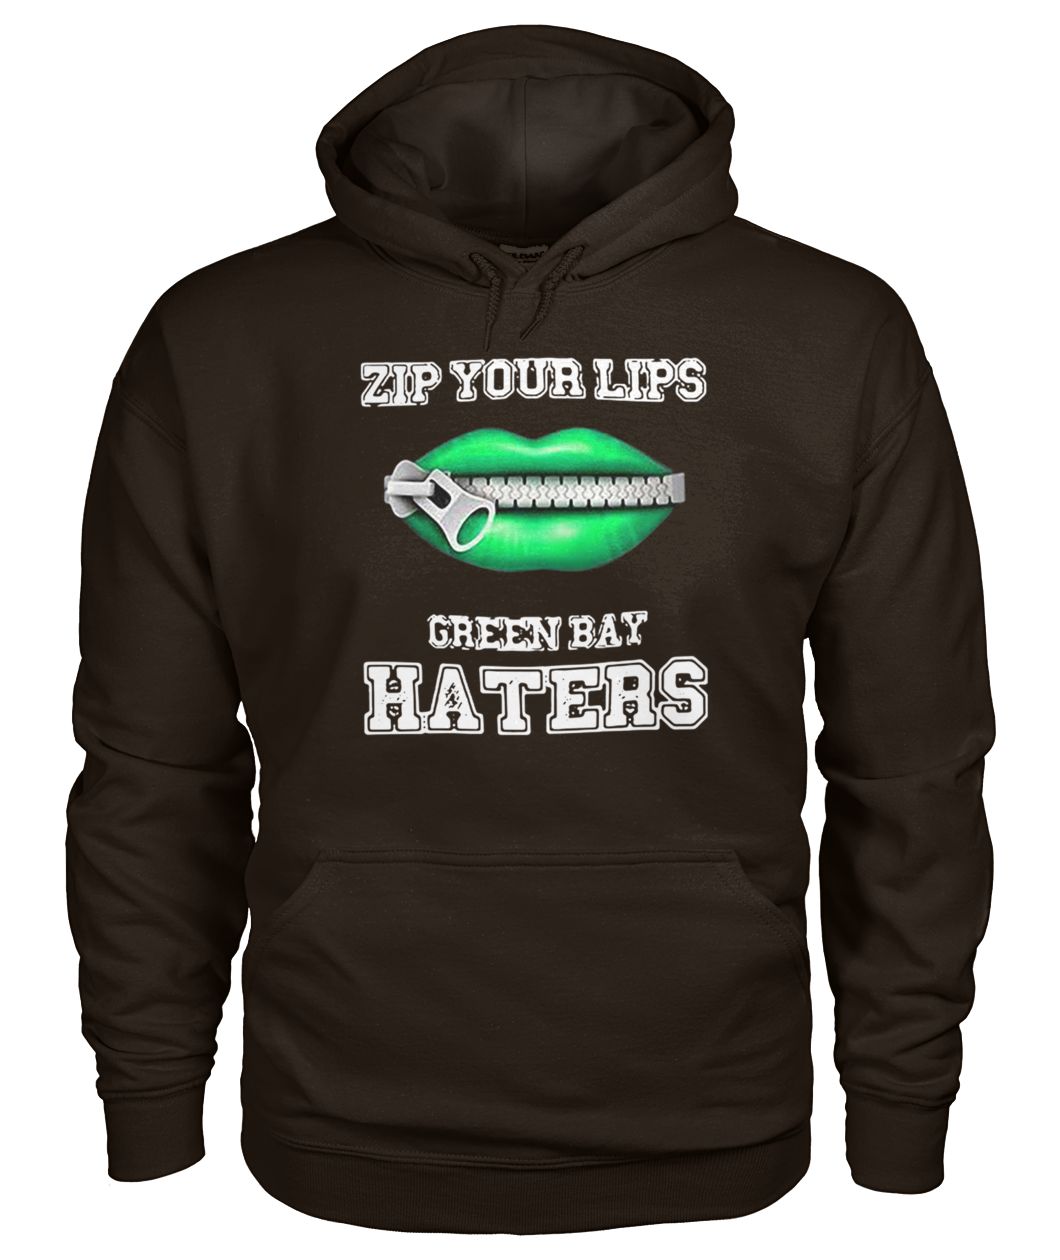 Zip your lips green bay packers haters gildan hoodie